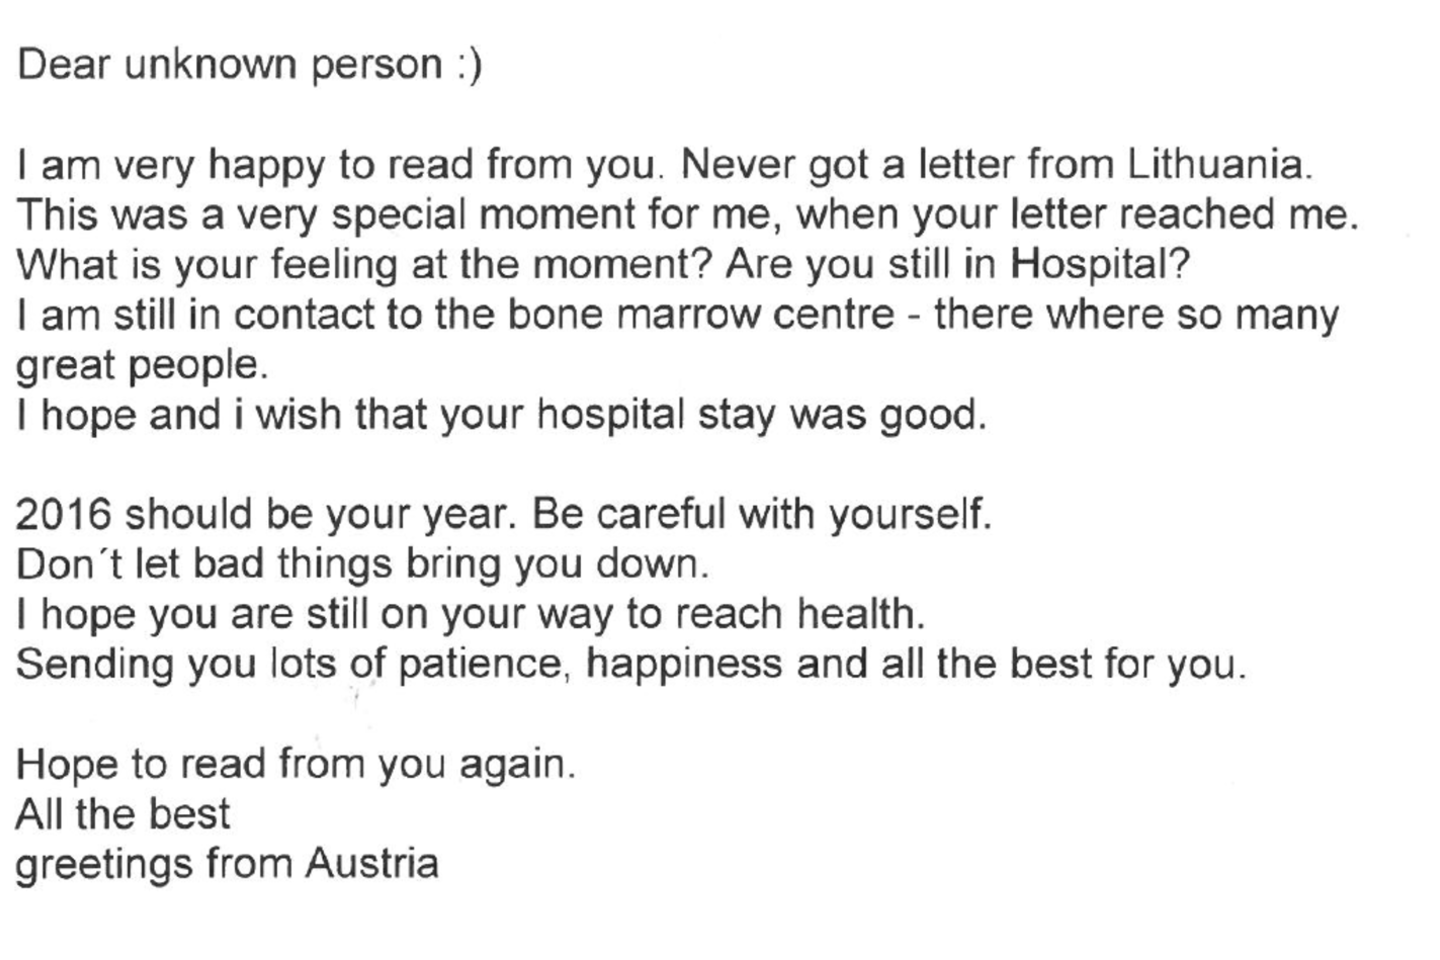 Paviešinti jautrūs ir dėkingumo kupini laiškai kaulų čiulpų donorams.